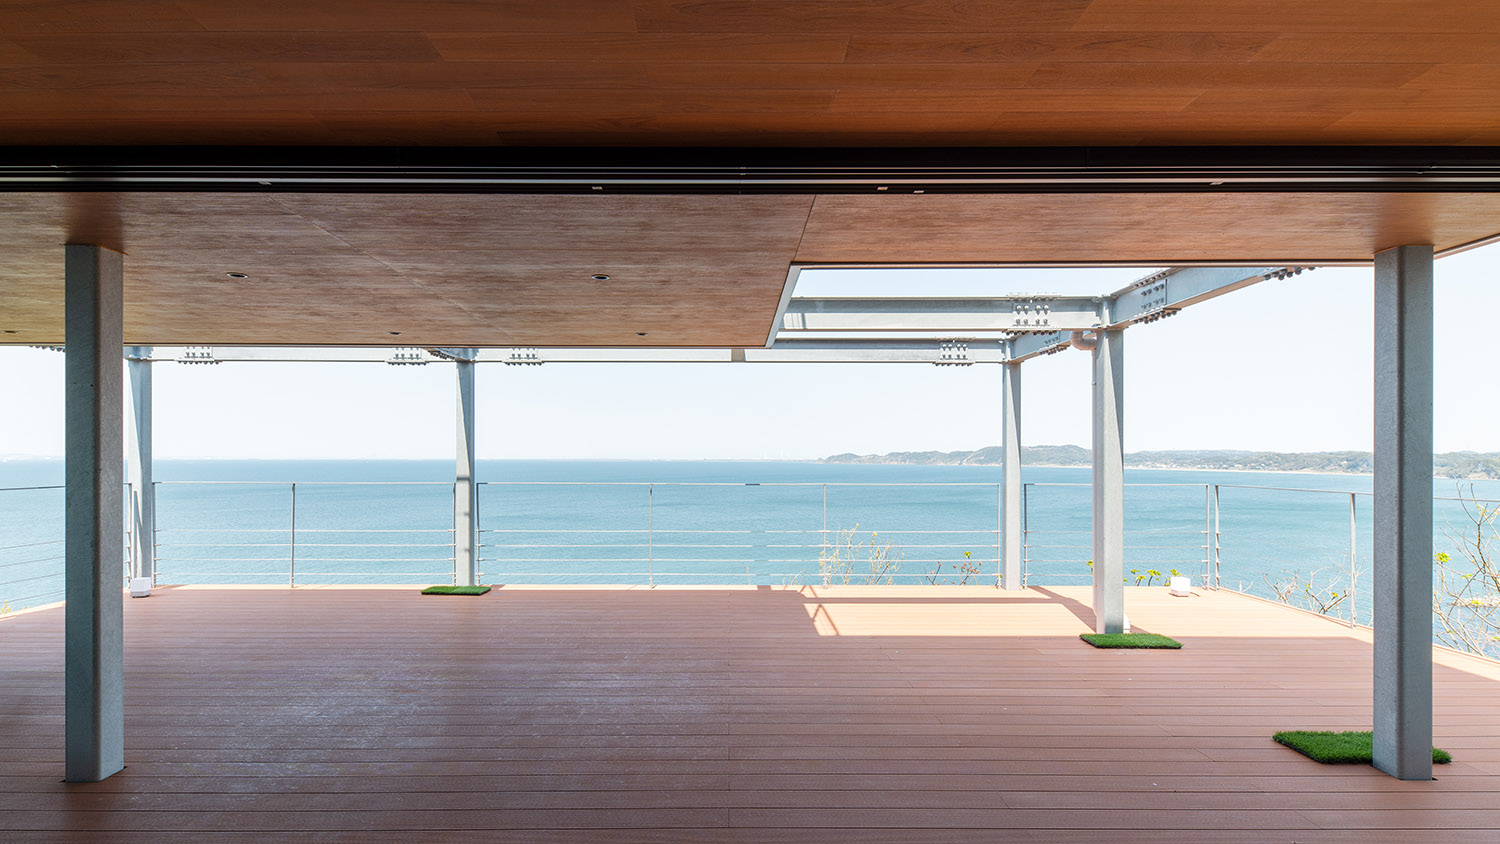 海と繋がるように見える屋根付きのウッドデッキのテラス・デザイン住宅